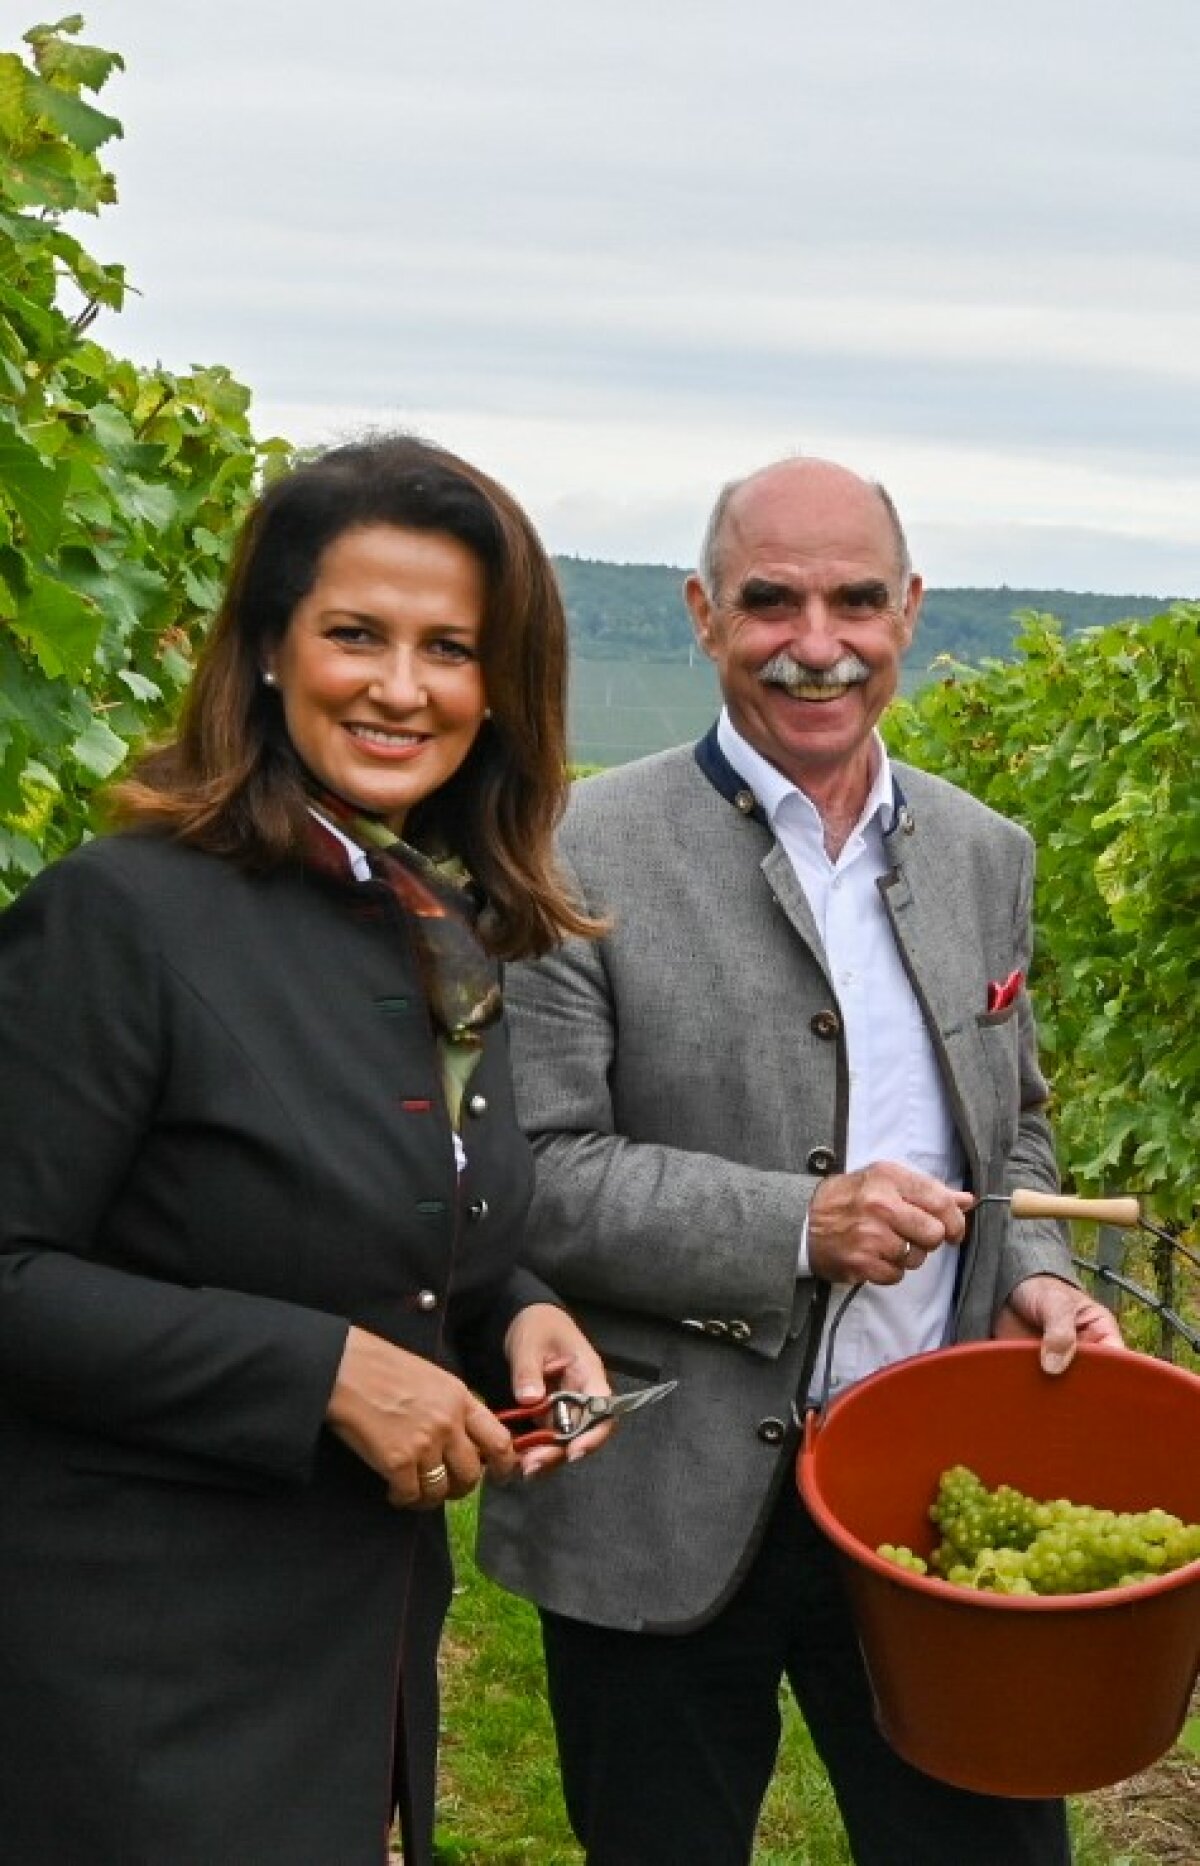 Archivfoto mit Landwirtschaftsministerin Michaela Kaniber und Weinbaupräsident Artur Steinmann bei der Eröffnung der Weinlese in Franken